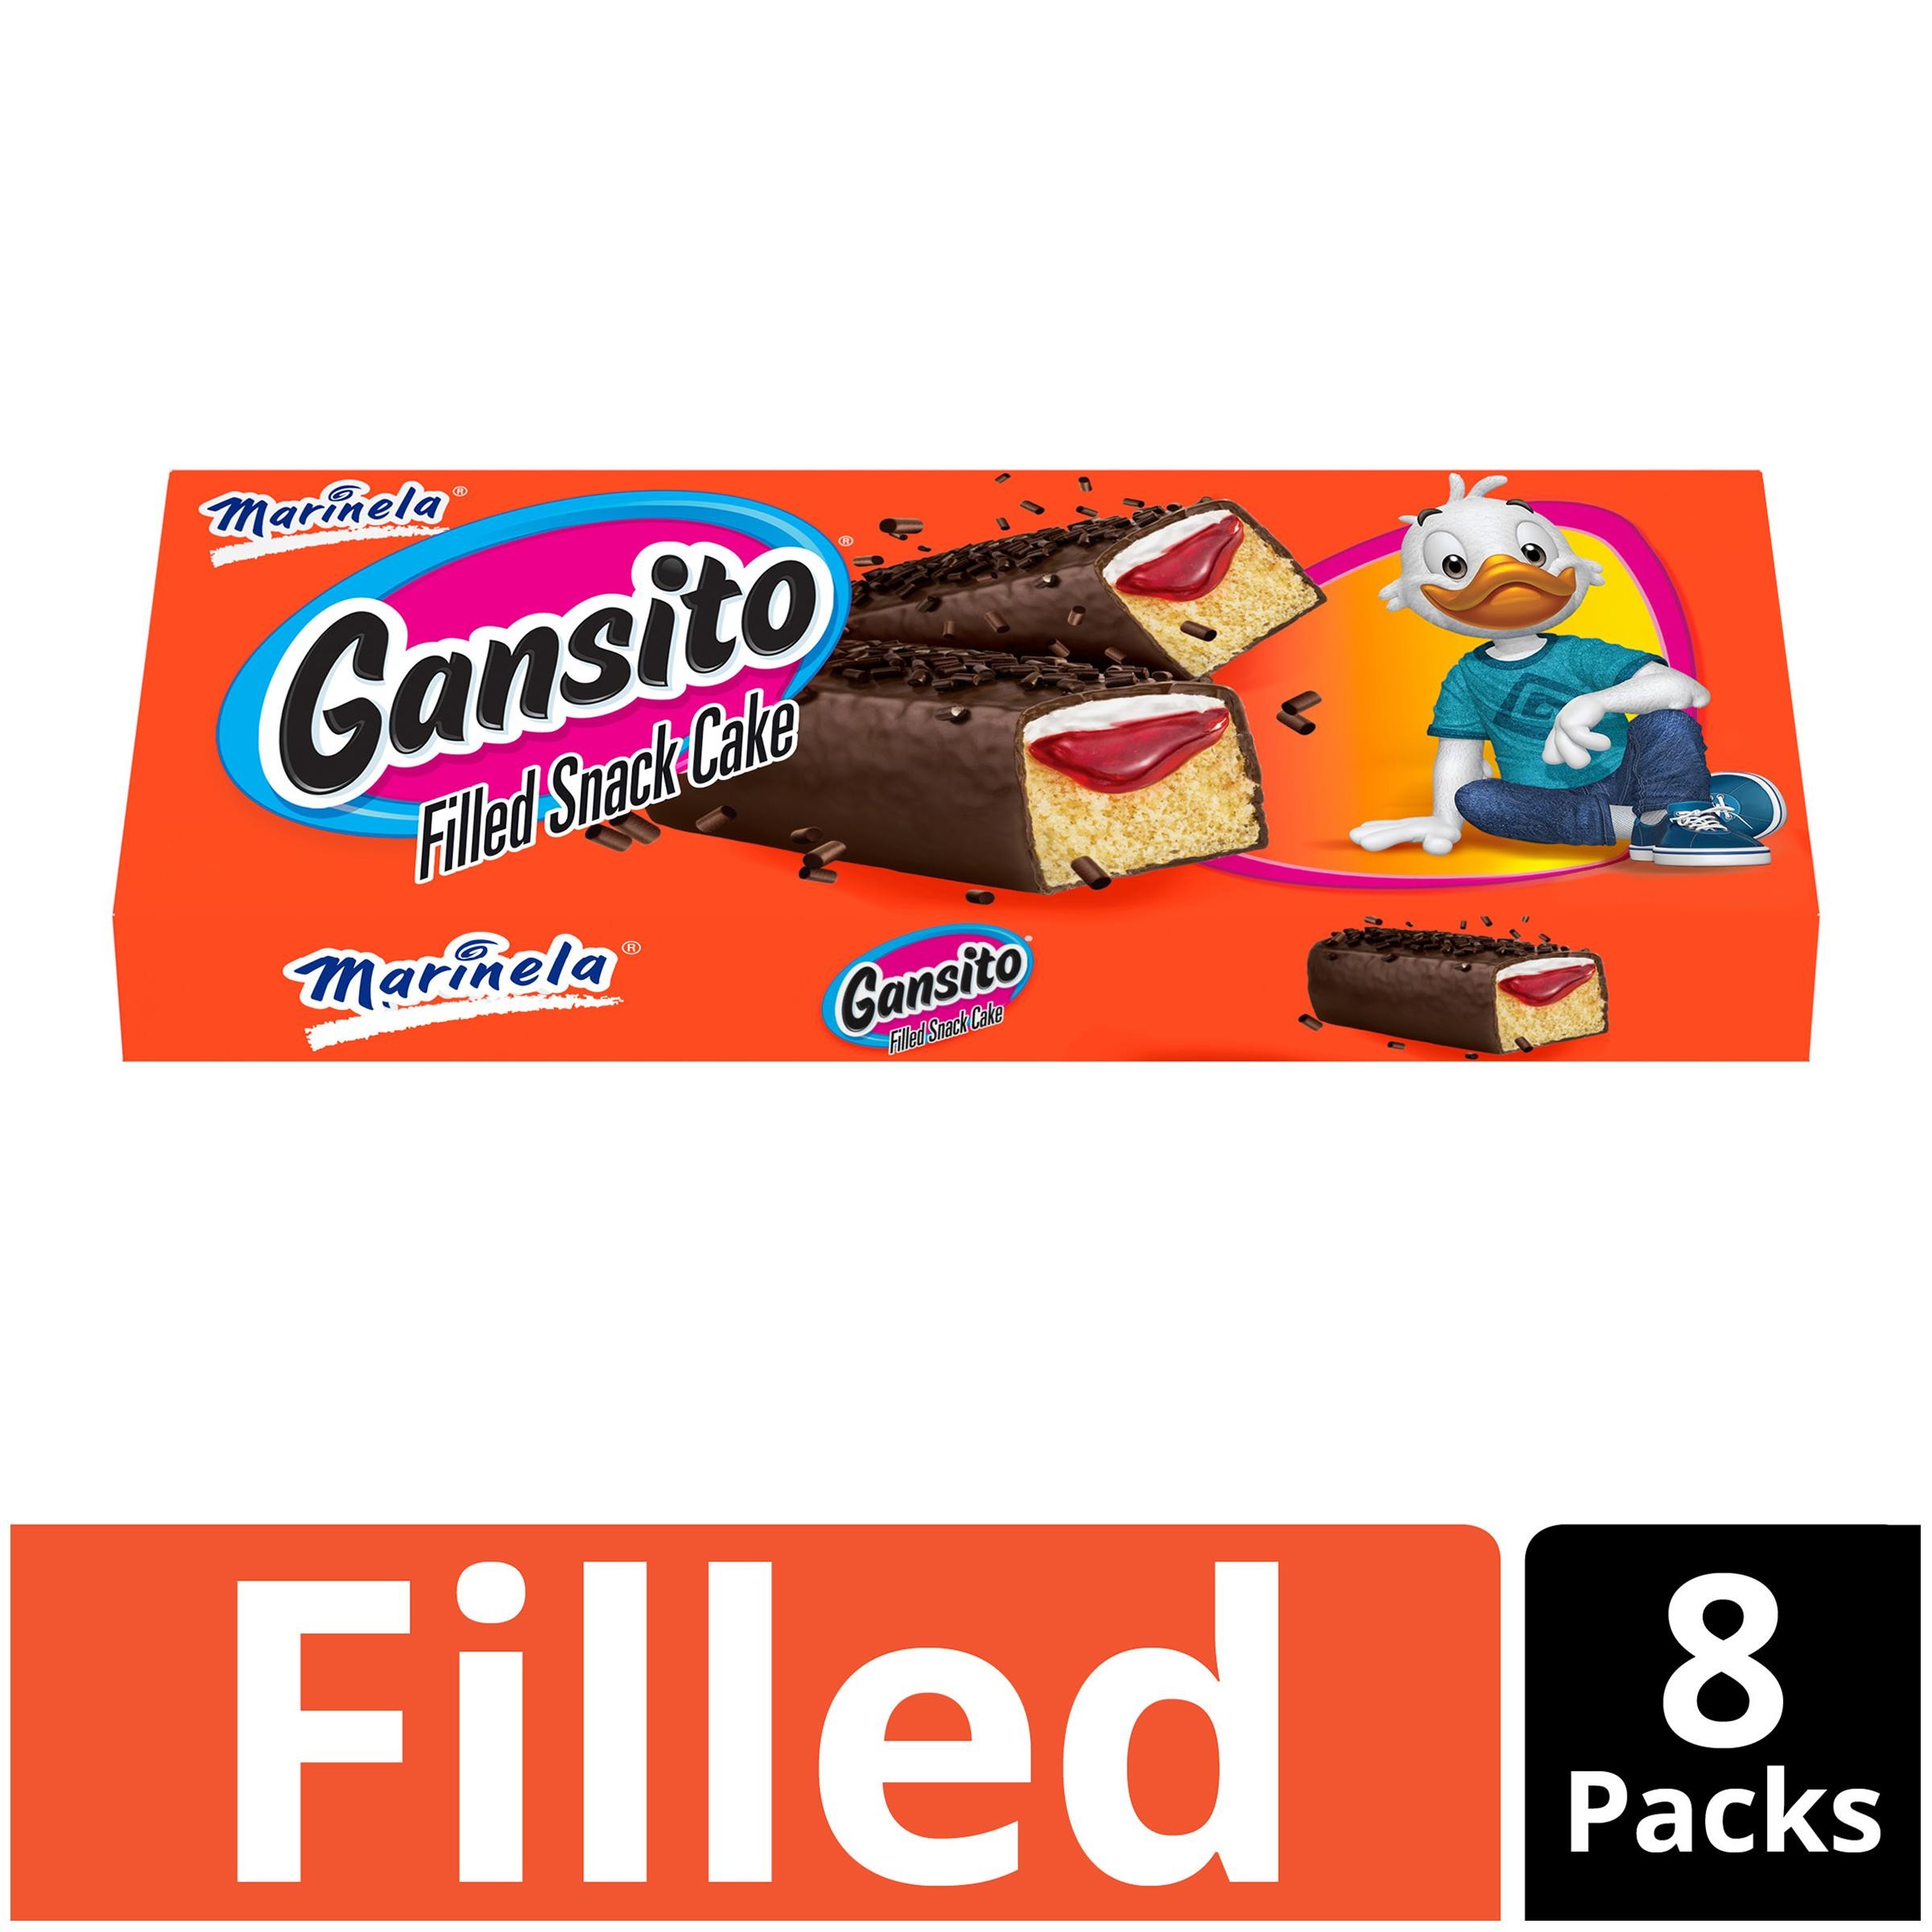 Marinela Gansito Snack Cakes - 8ct/14.08oz